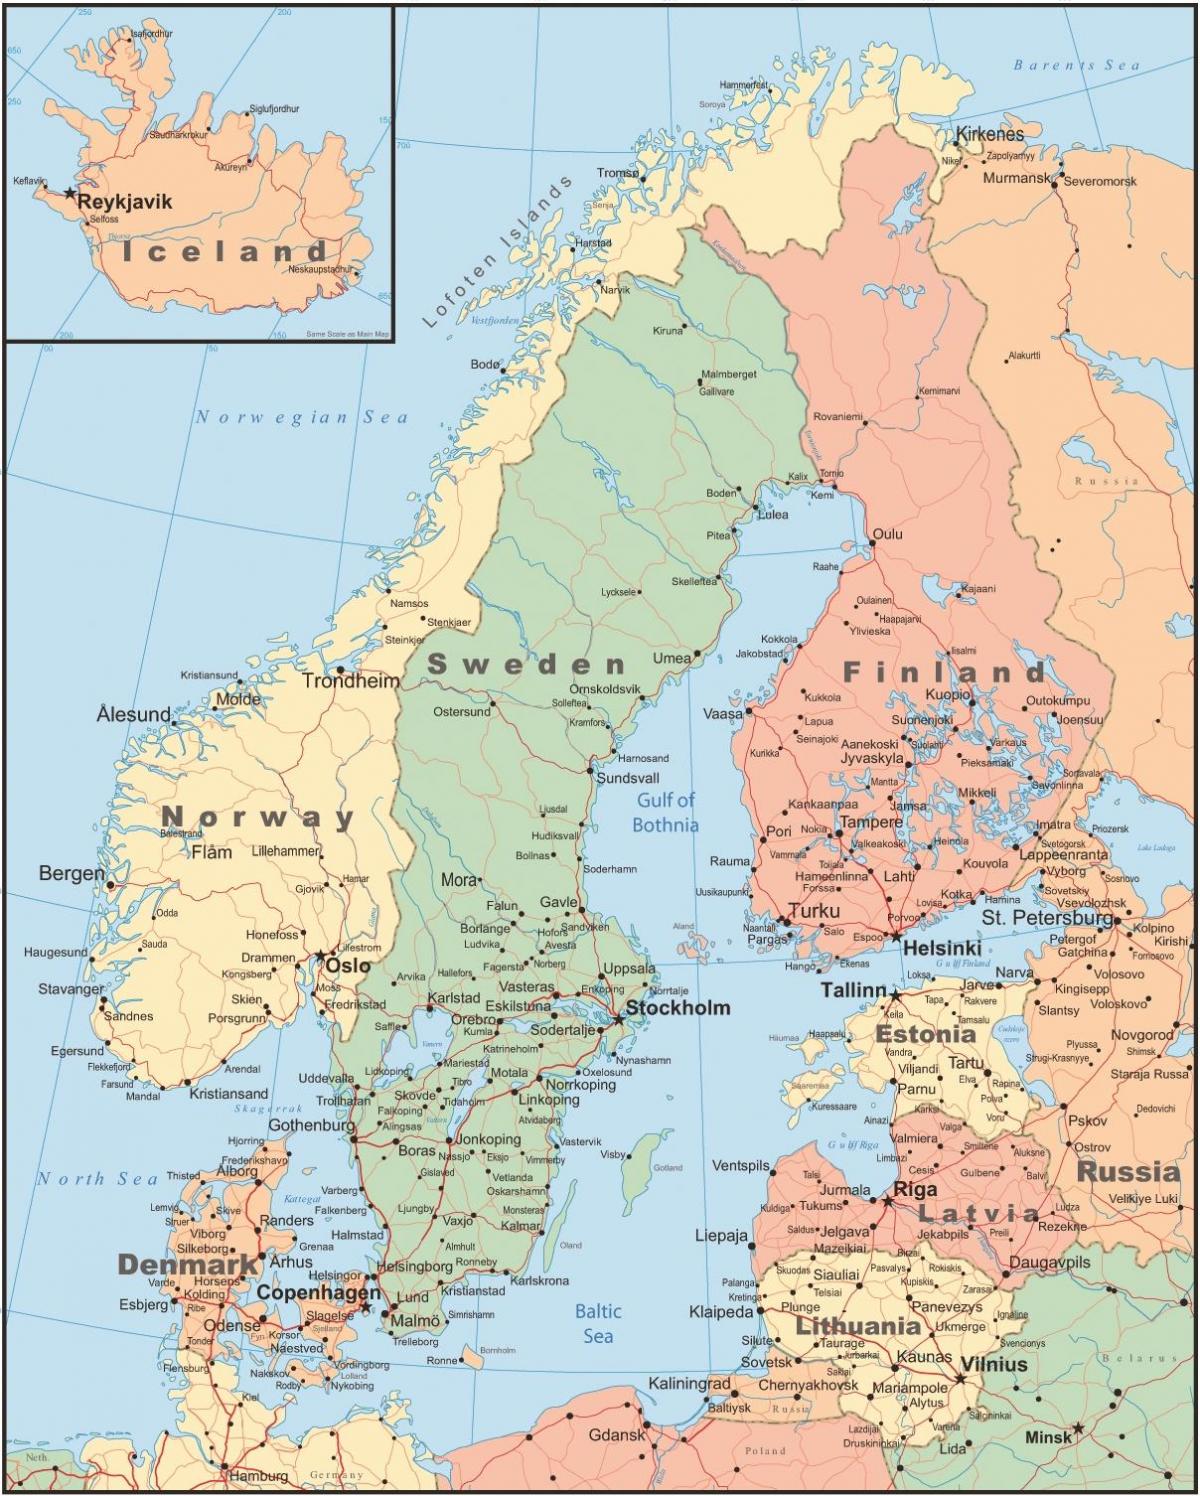 Karta Finske i susjednih zemalja